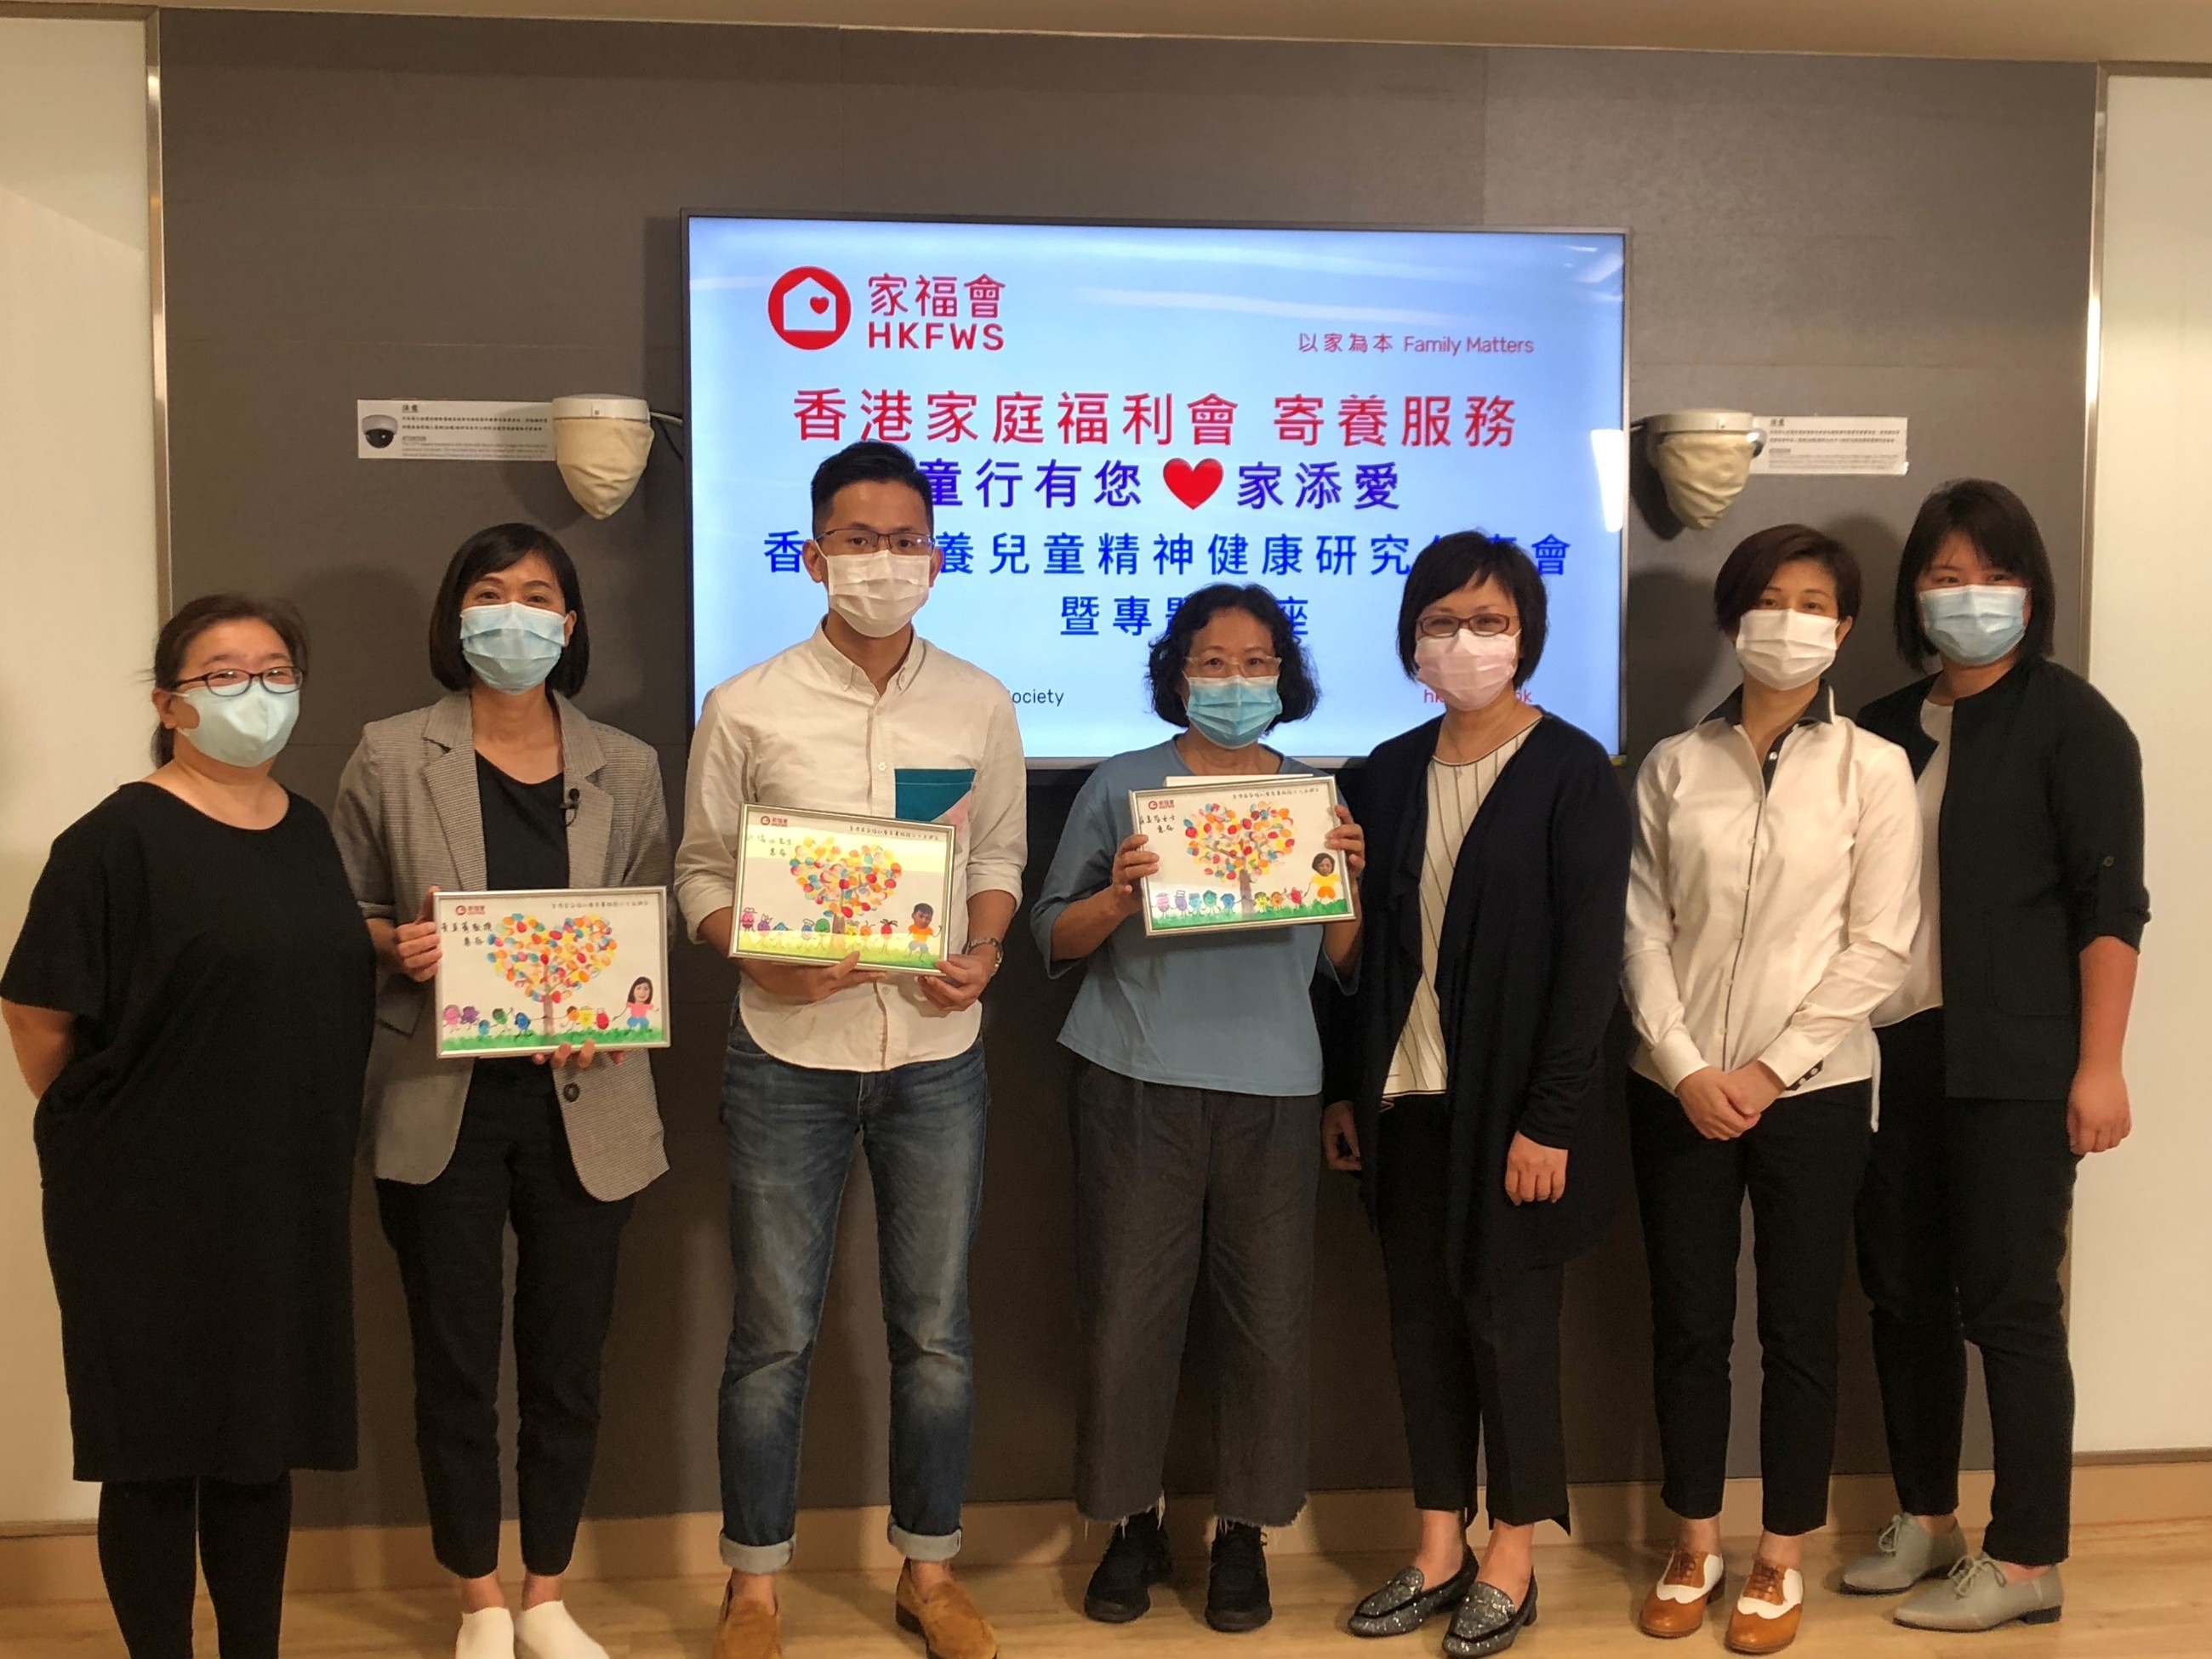 家福會公佈「香港寄養兒童精神健康研究」， 促請政府增撥資源、協調服務系統之間合作，加強對寄養家長的支援